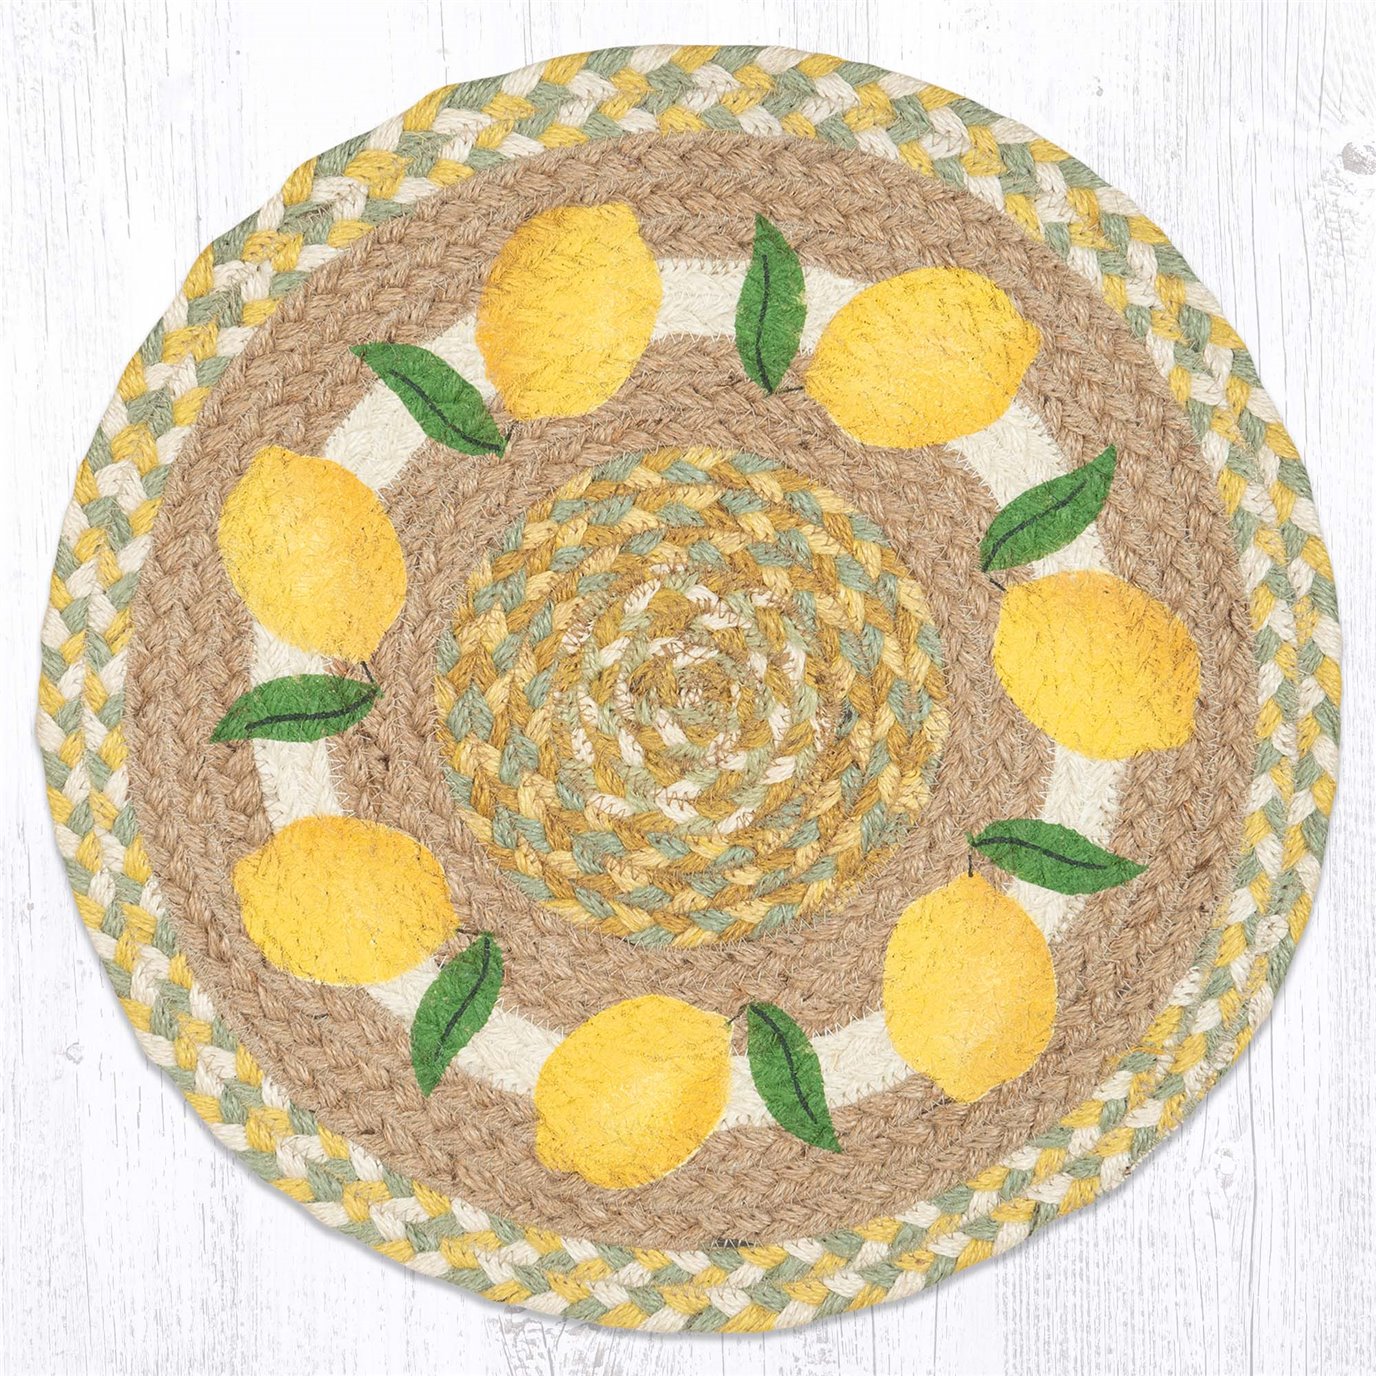 Lemon Printed Round Placemat 15"x15"